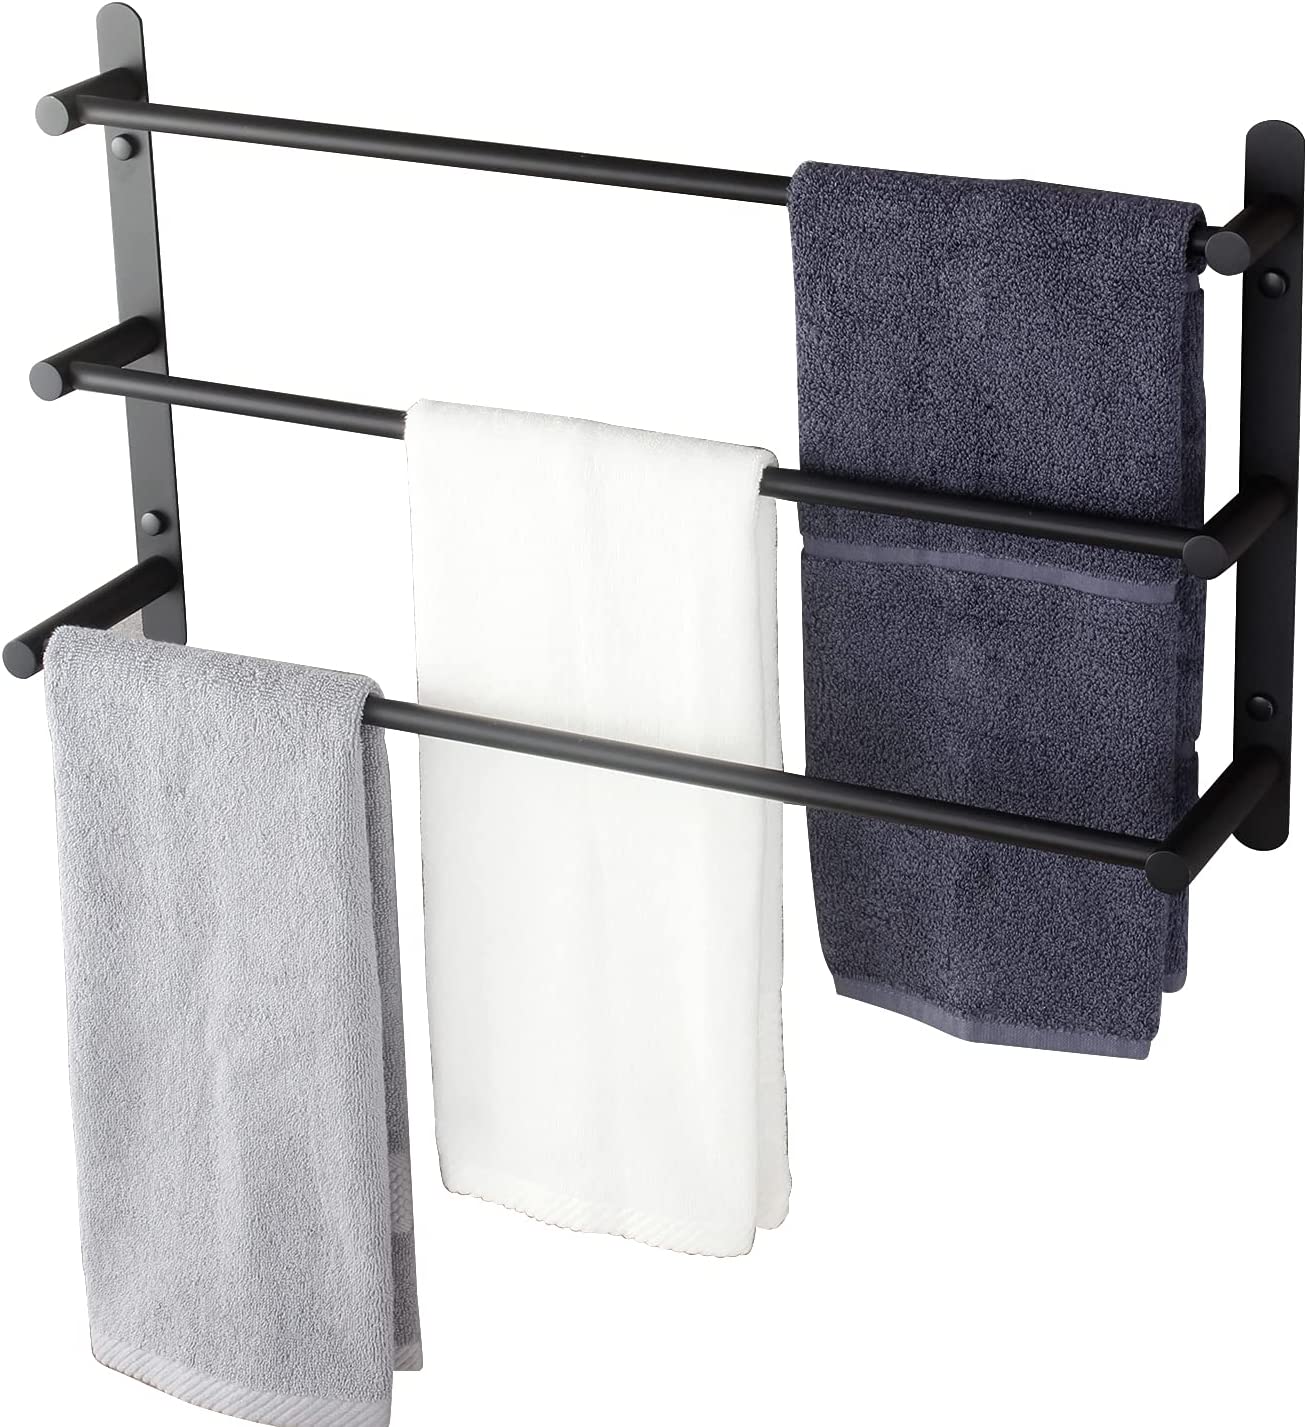 3 Tiers Towel Holder